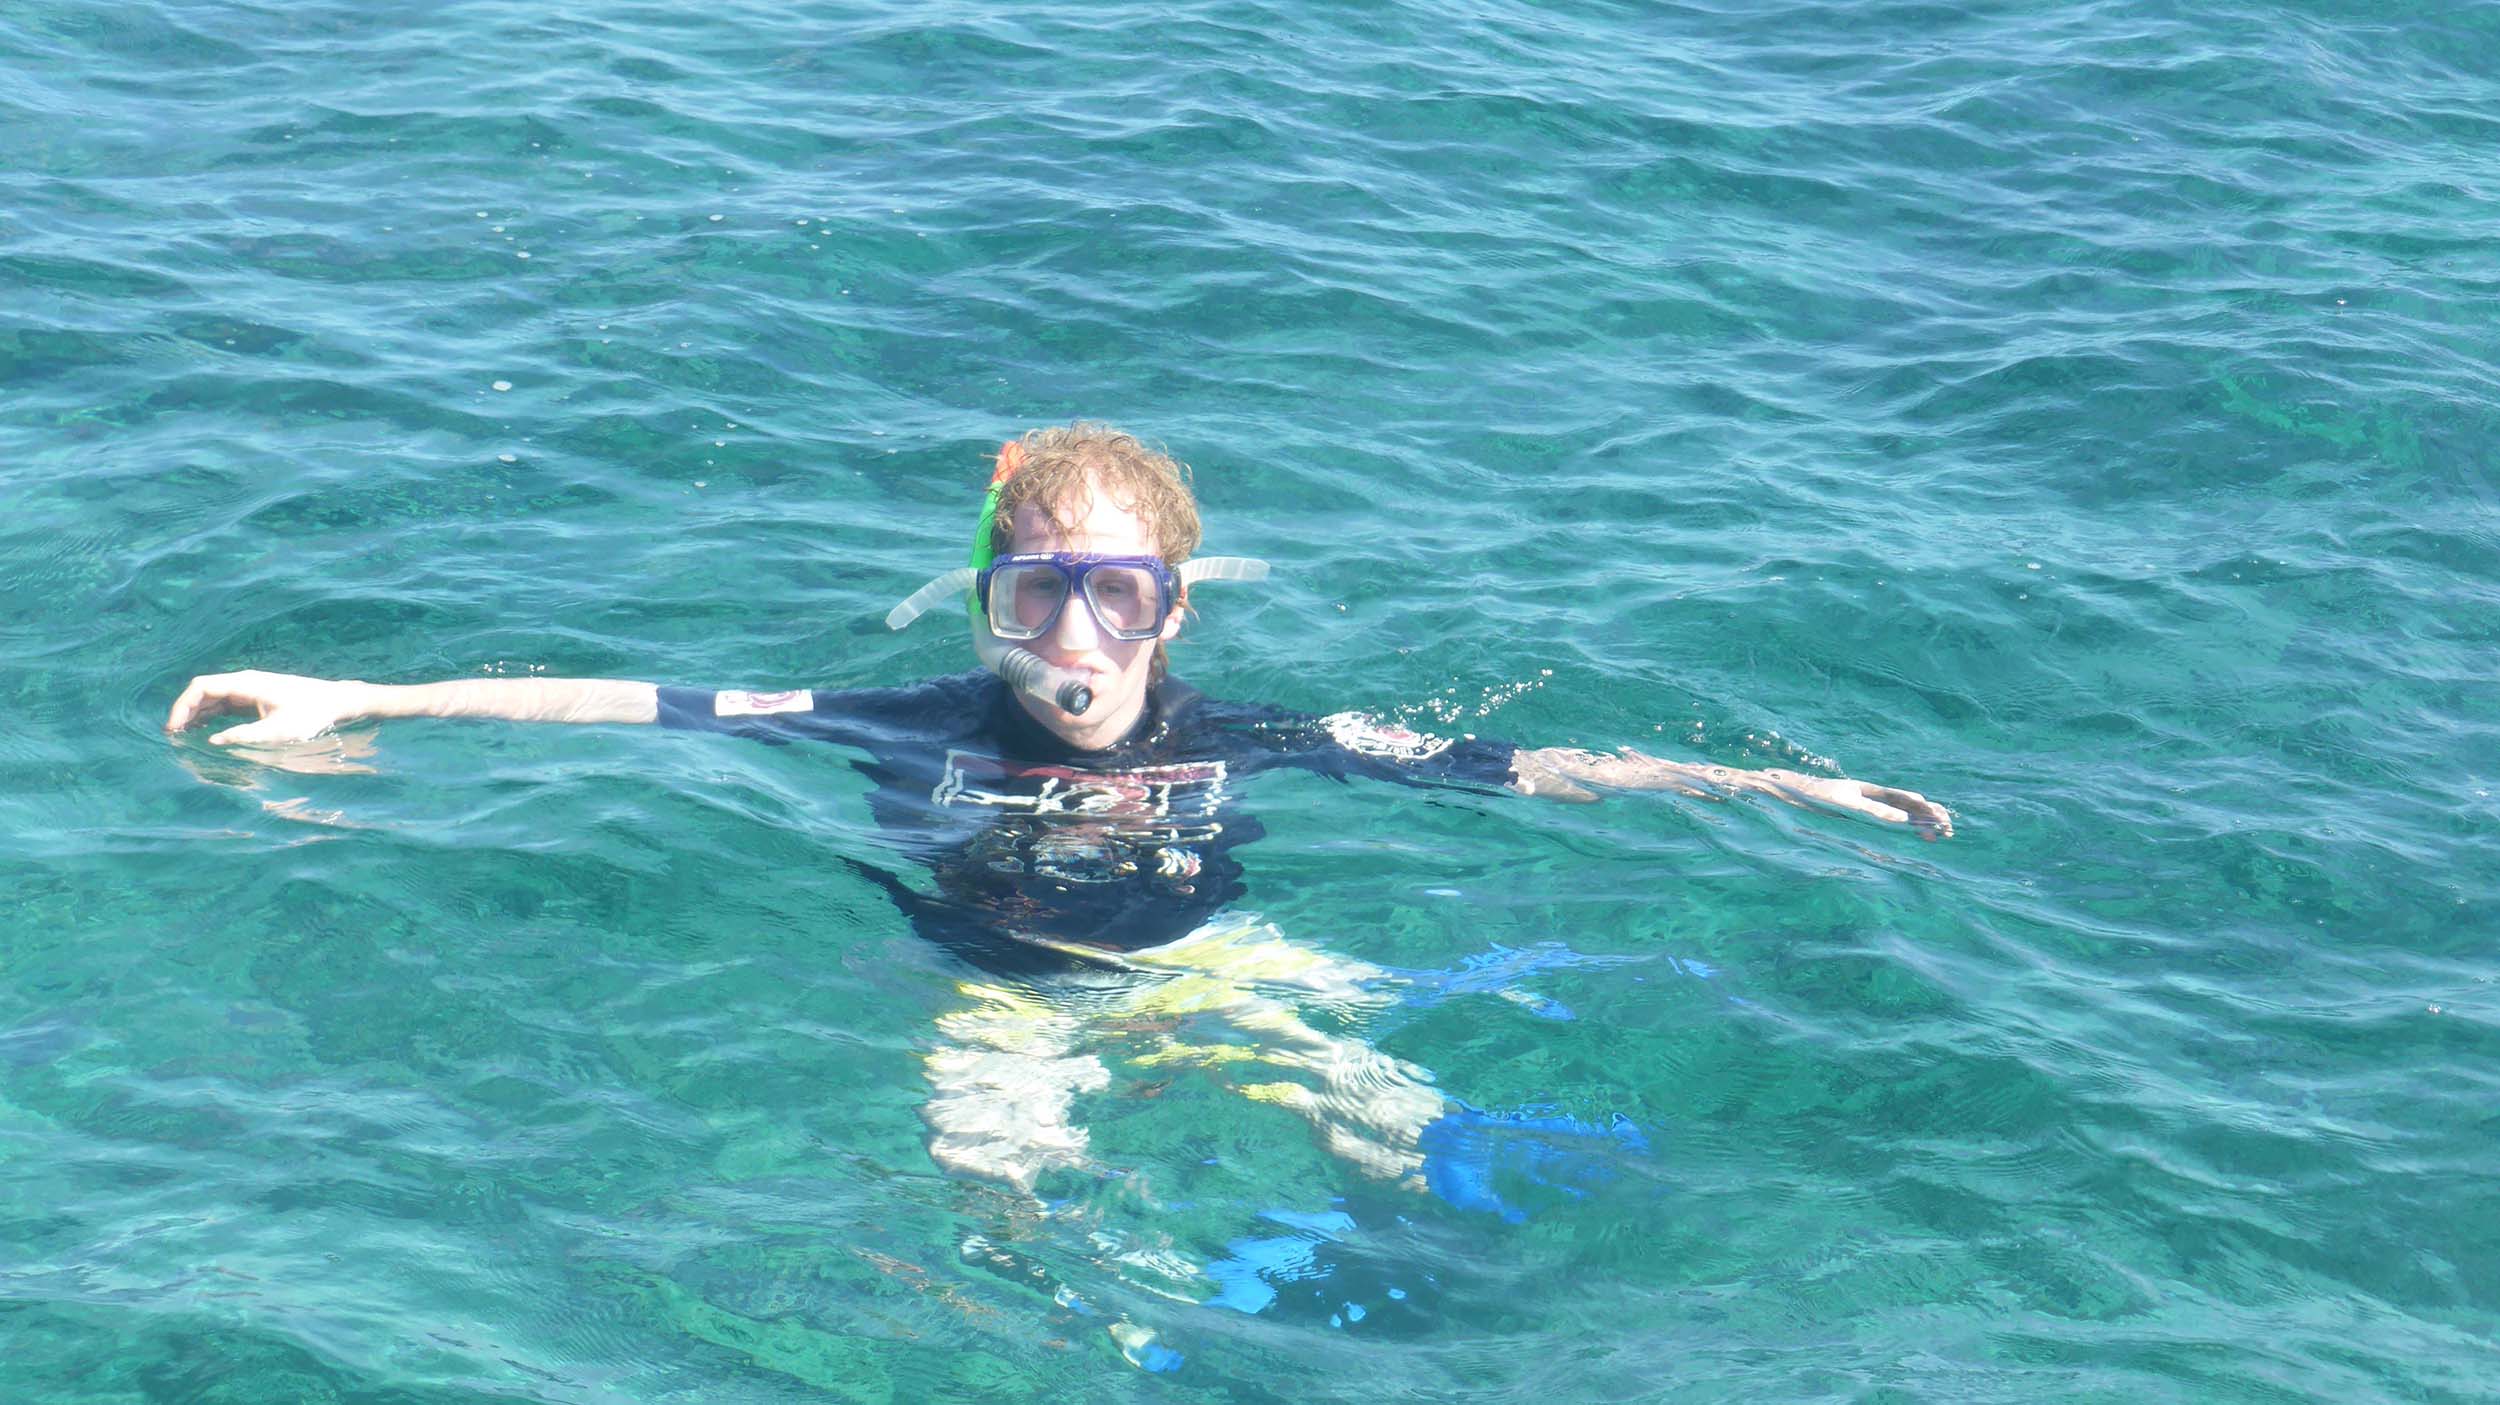 Ben snorkelling in emerald waters